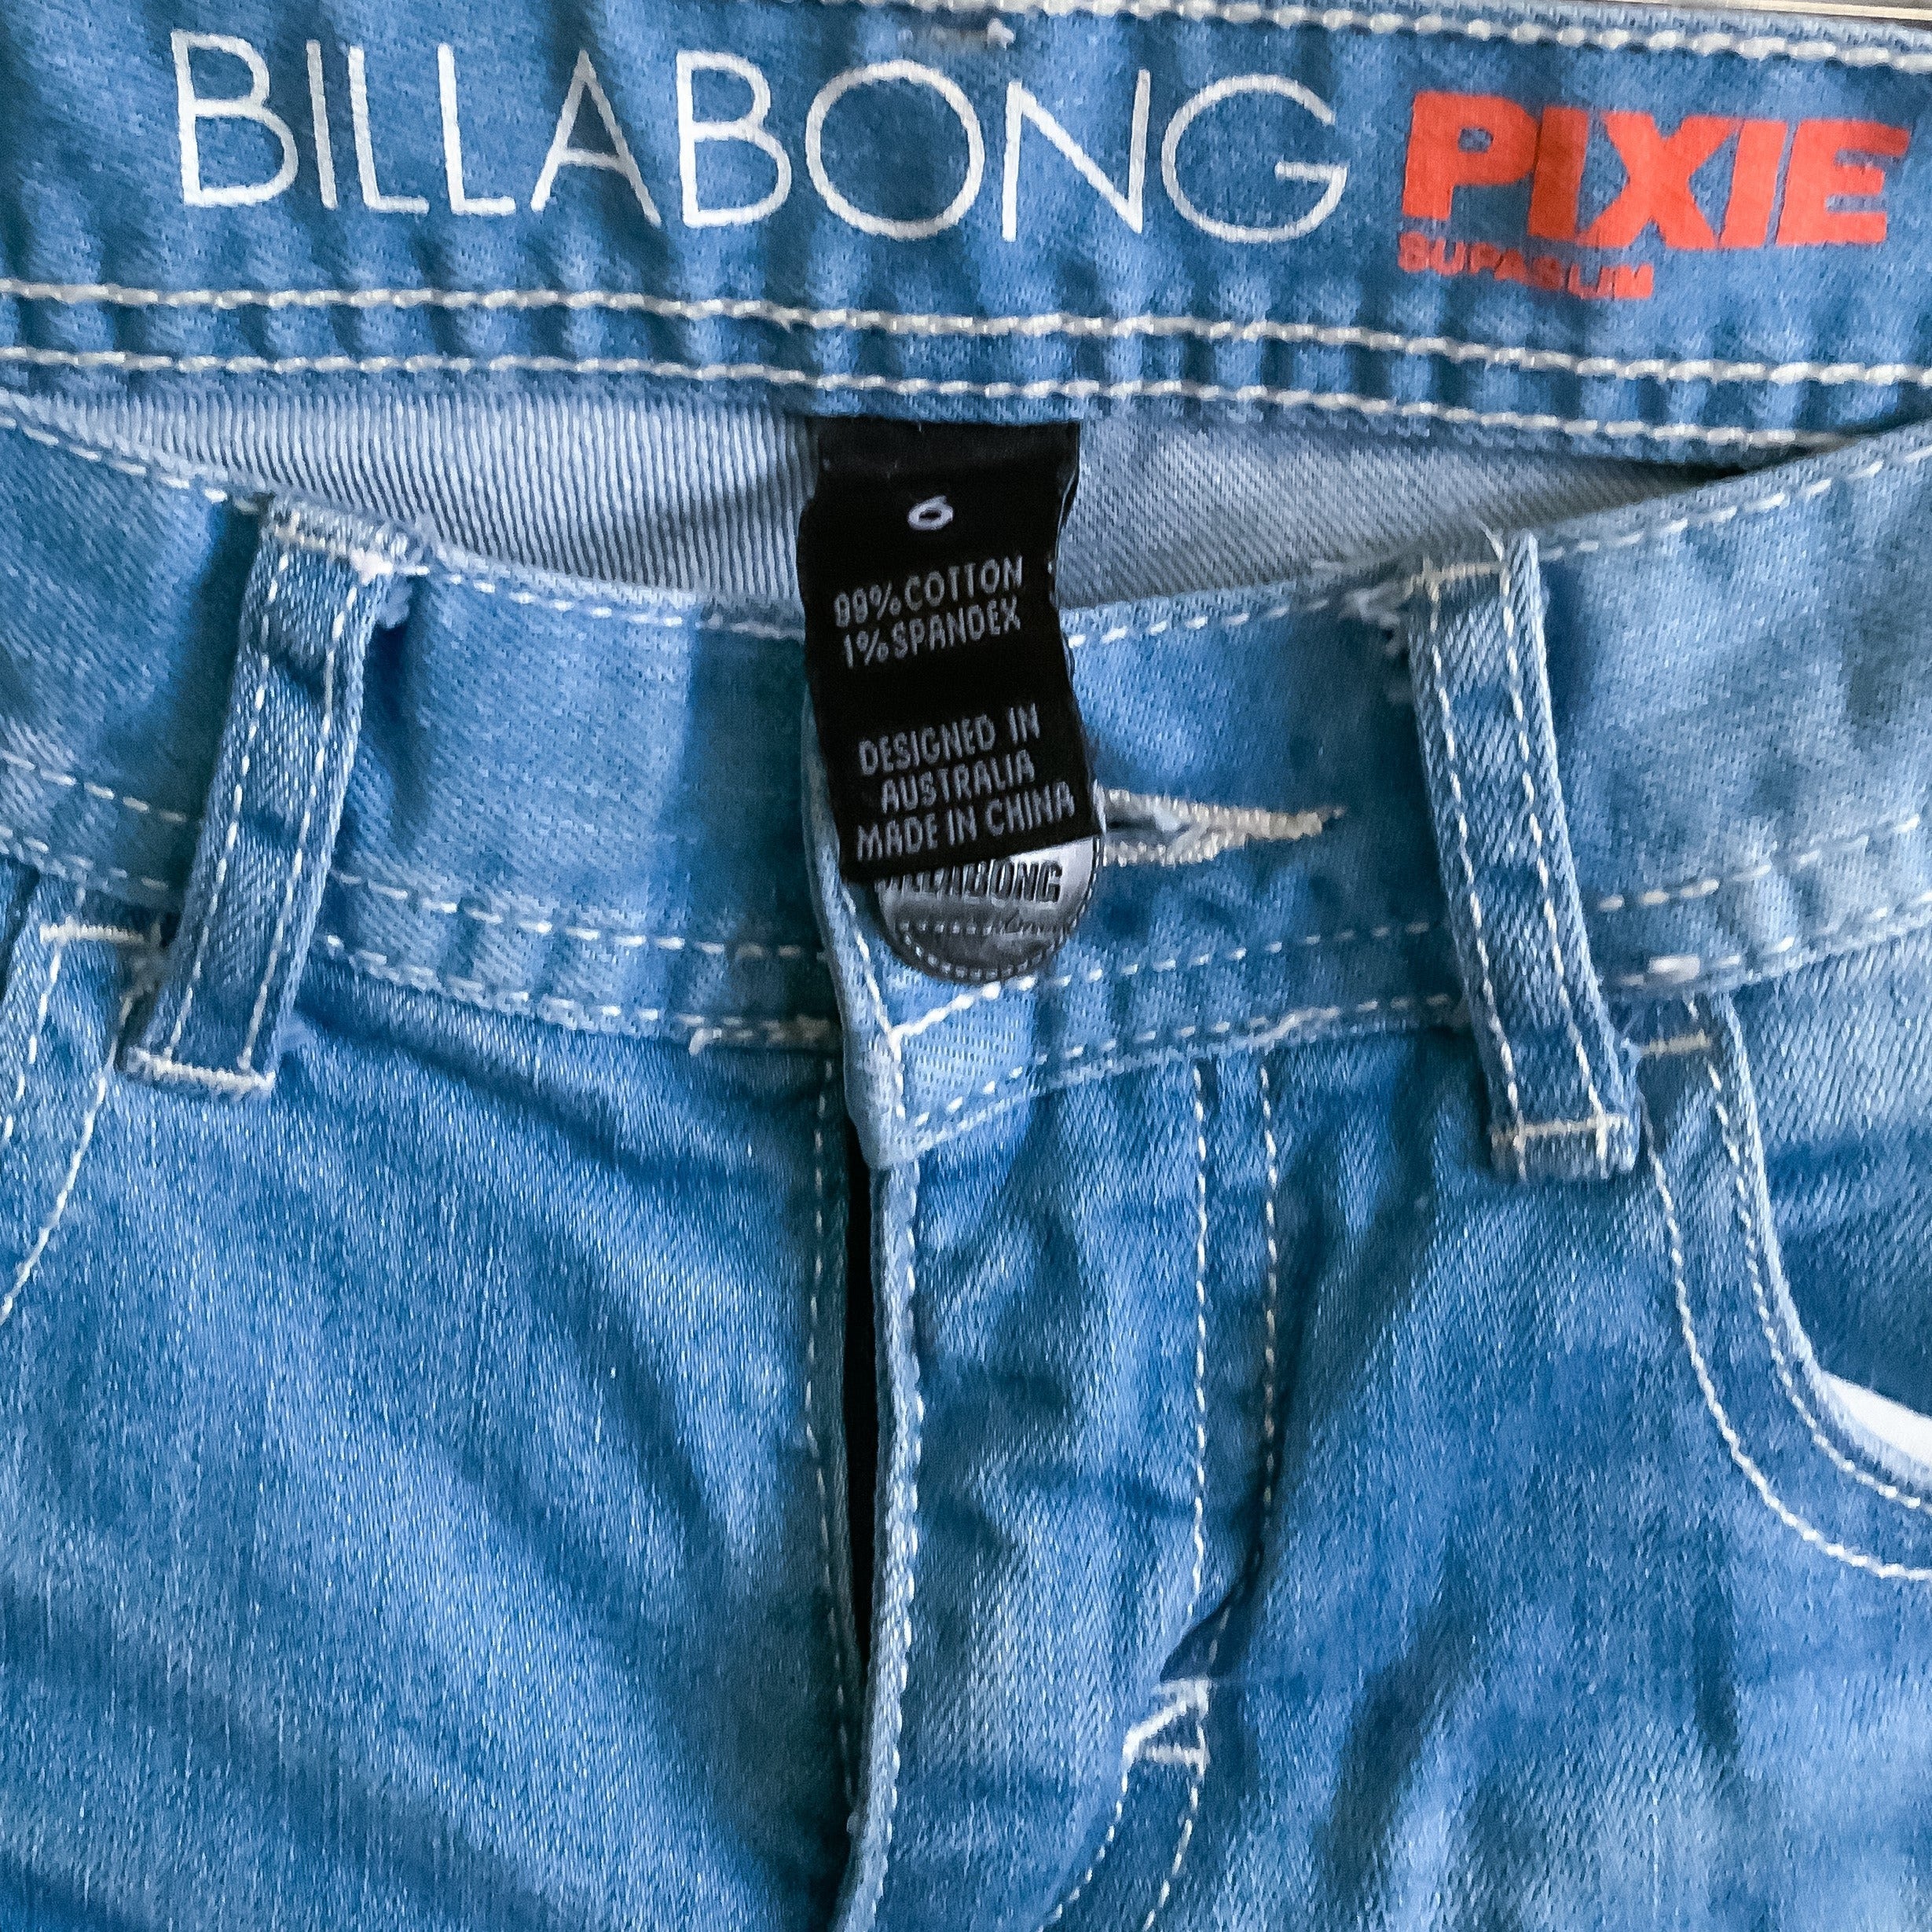 BILLABONG Supaslim Pixie Light Blue Washed skinny Jeans - Size 6